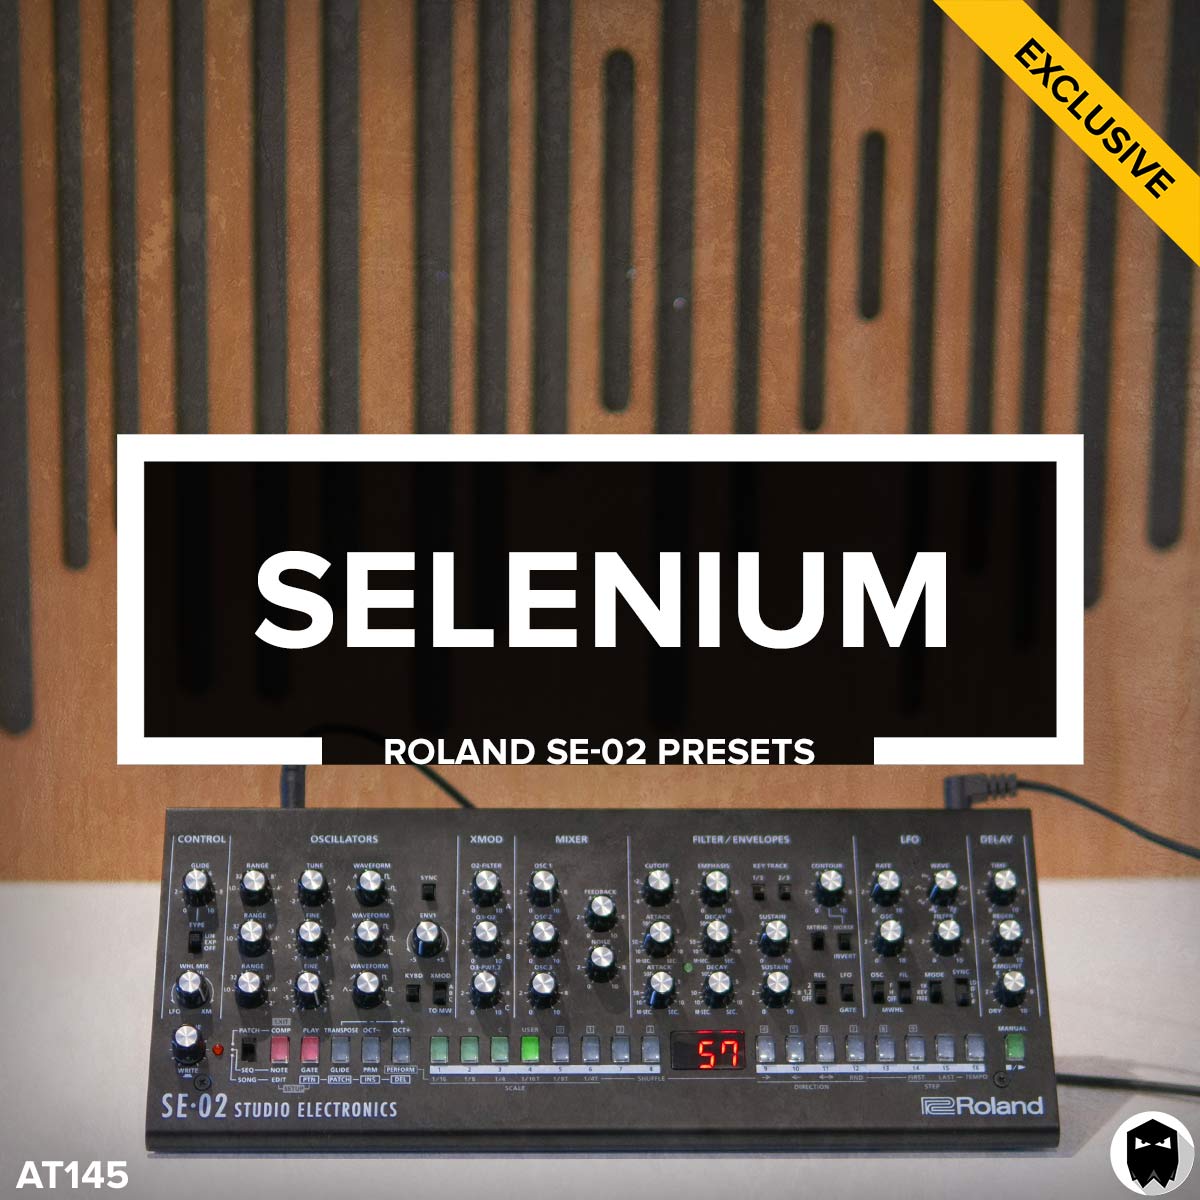 Selenium // Roland SE-02 Presets